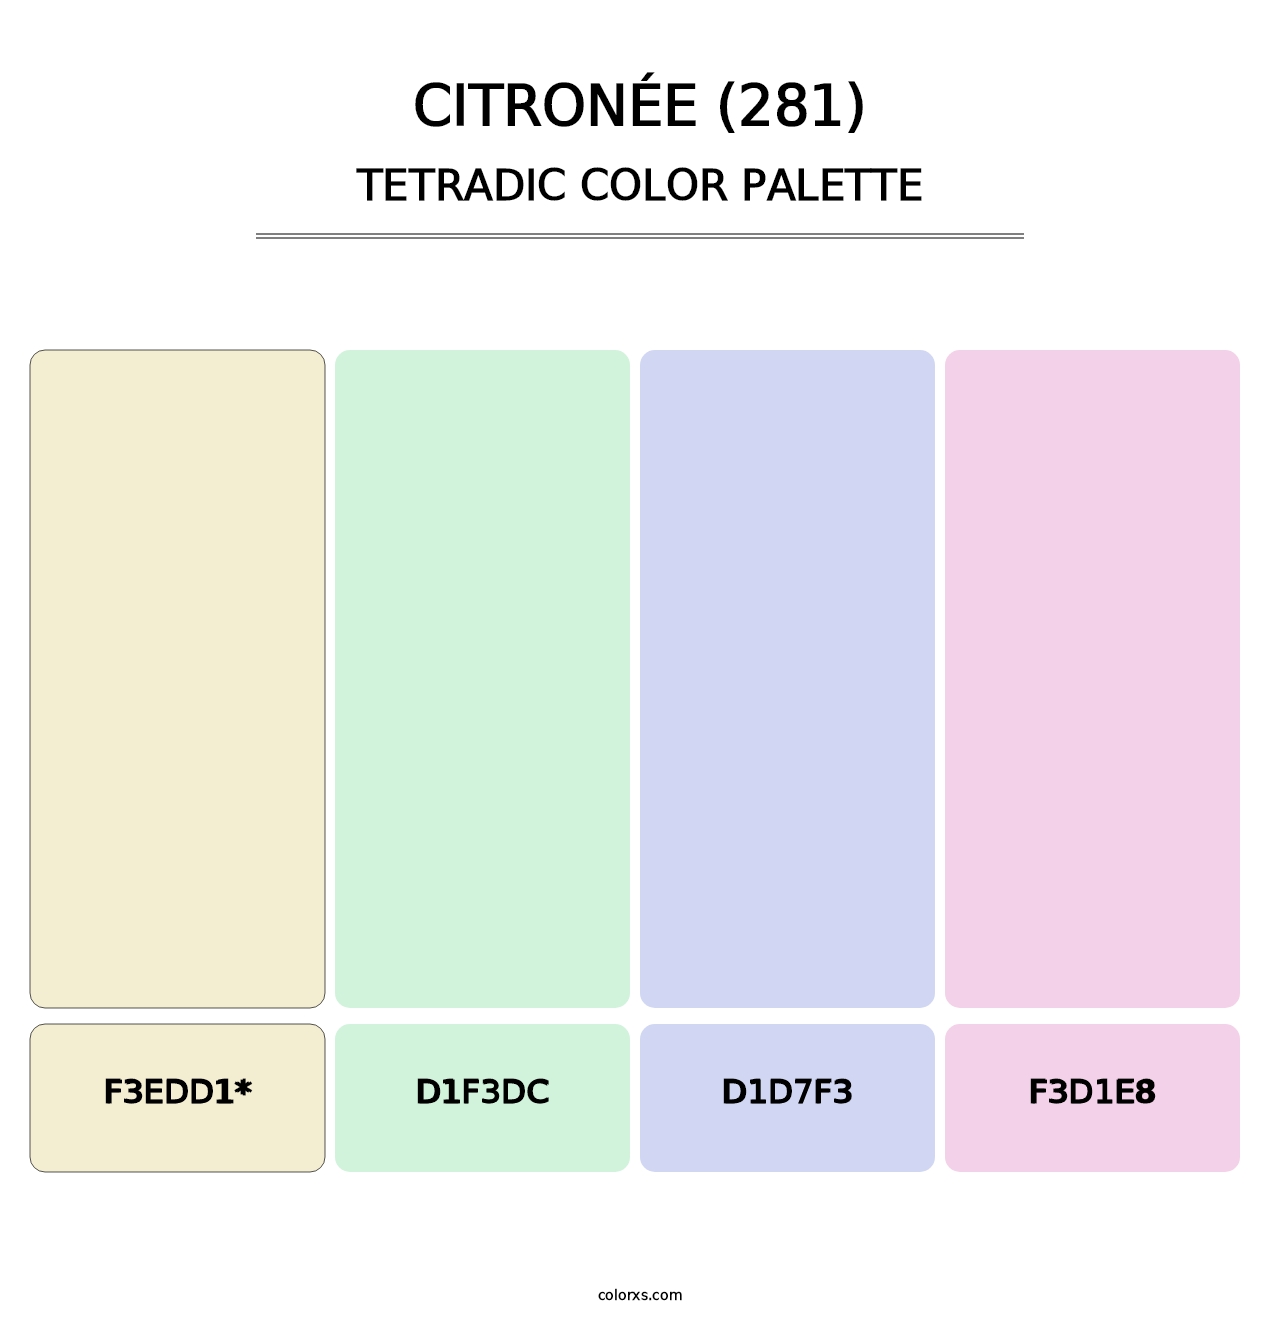 Citronée (281) - Tetradic Color Palette